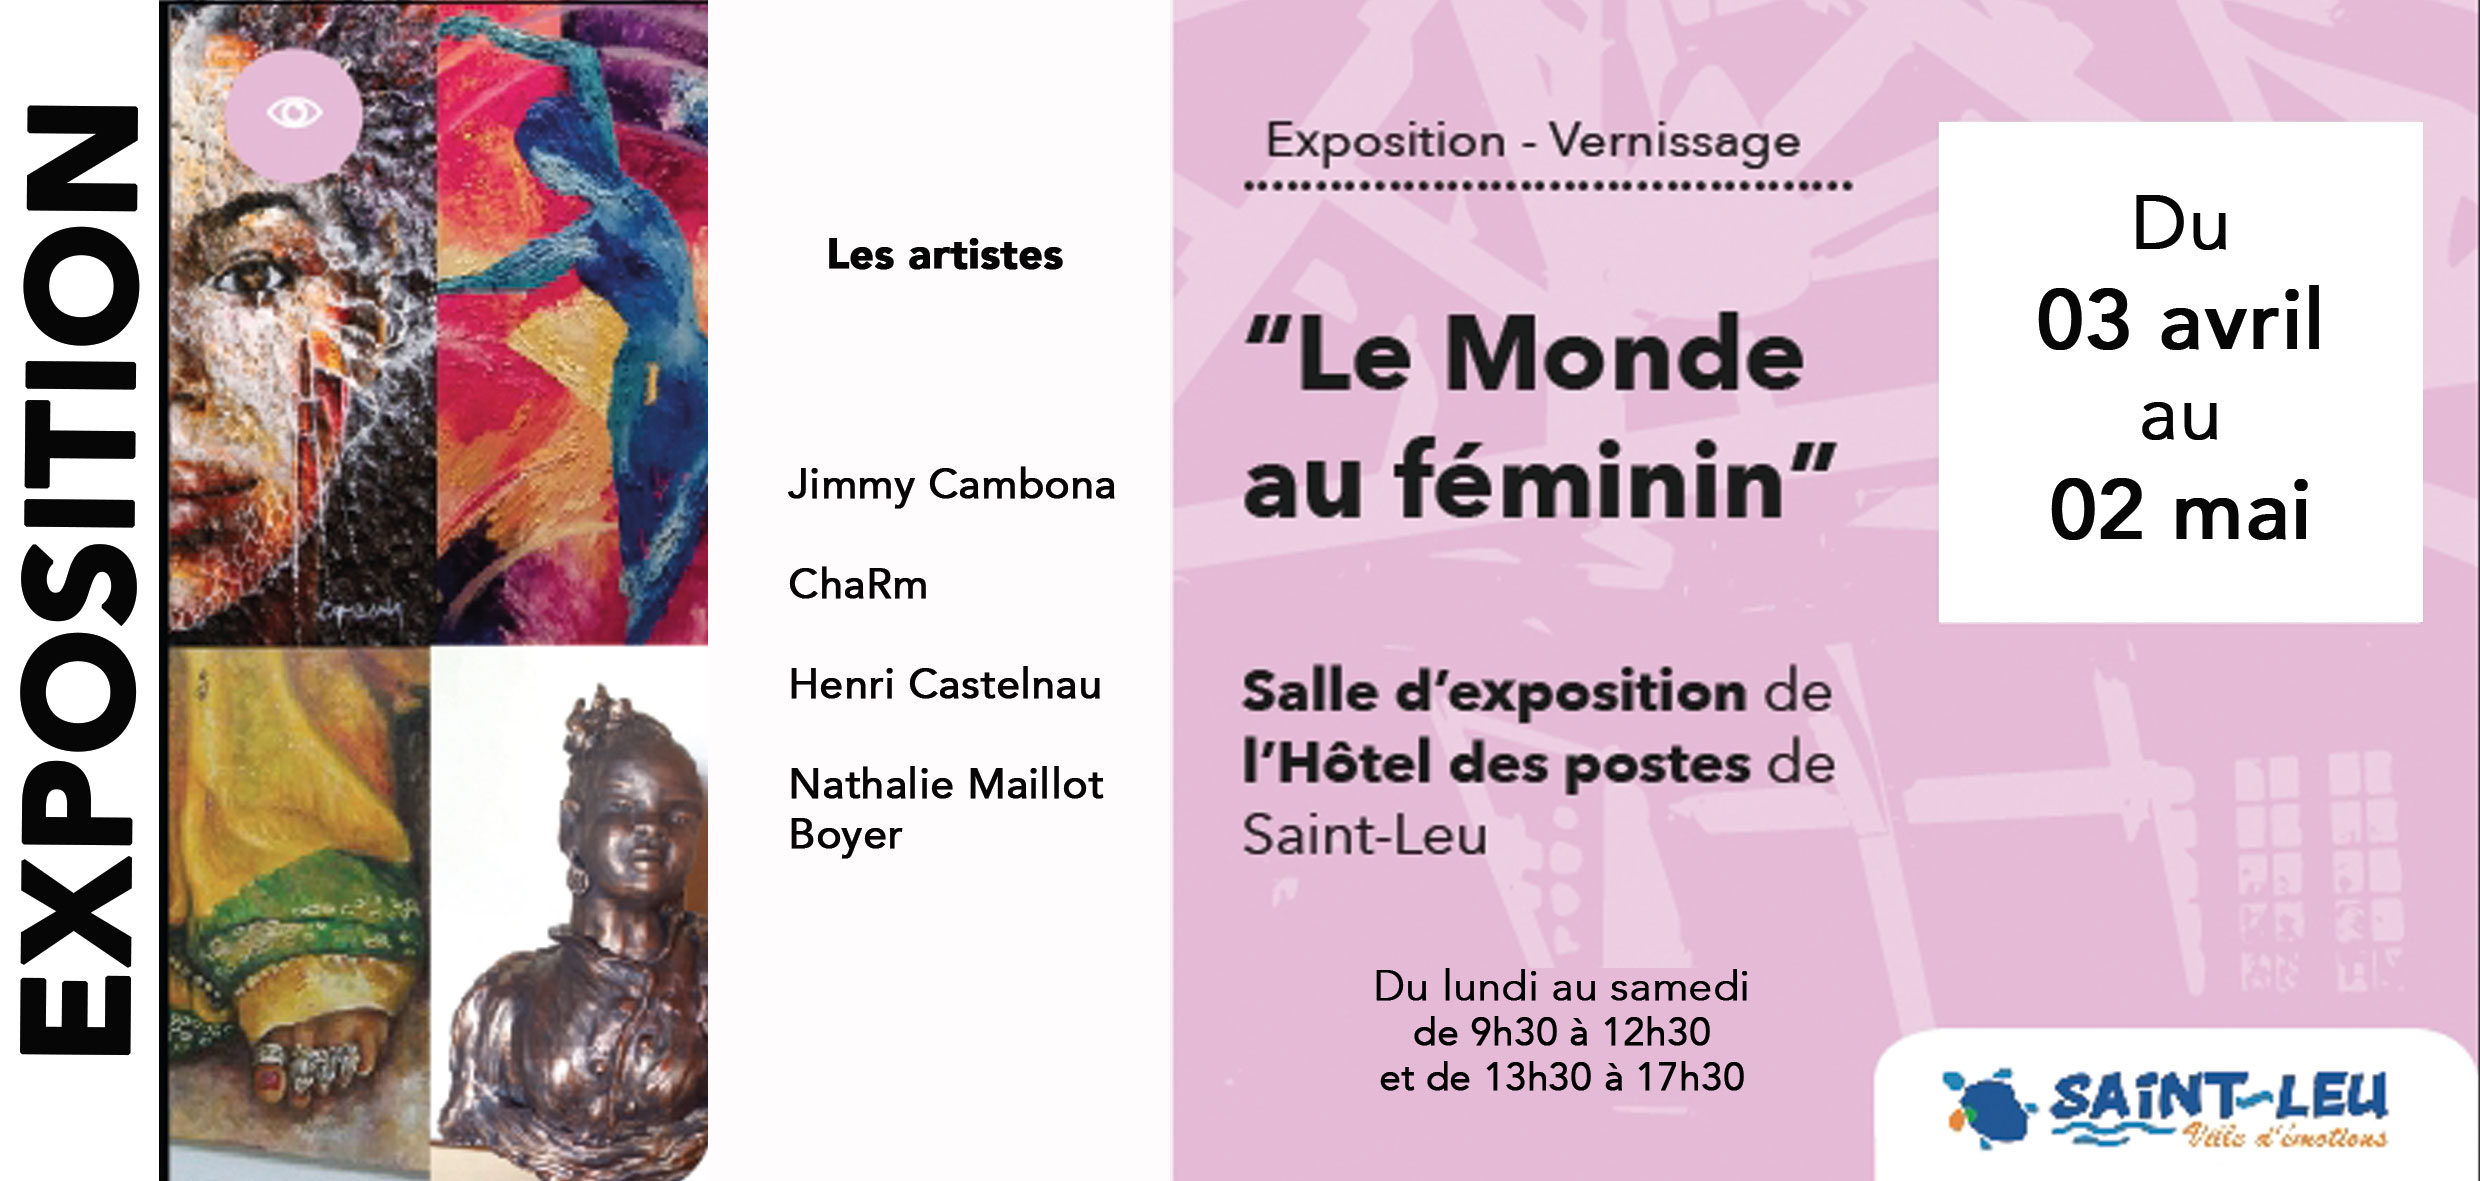 "Le monde au féminin" en expo à St-Leu